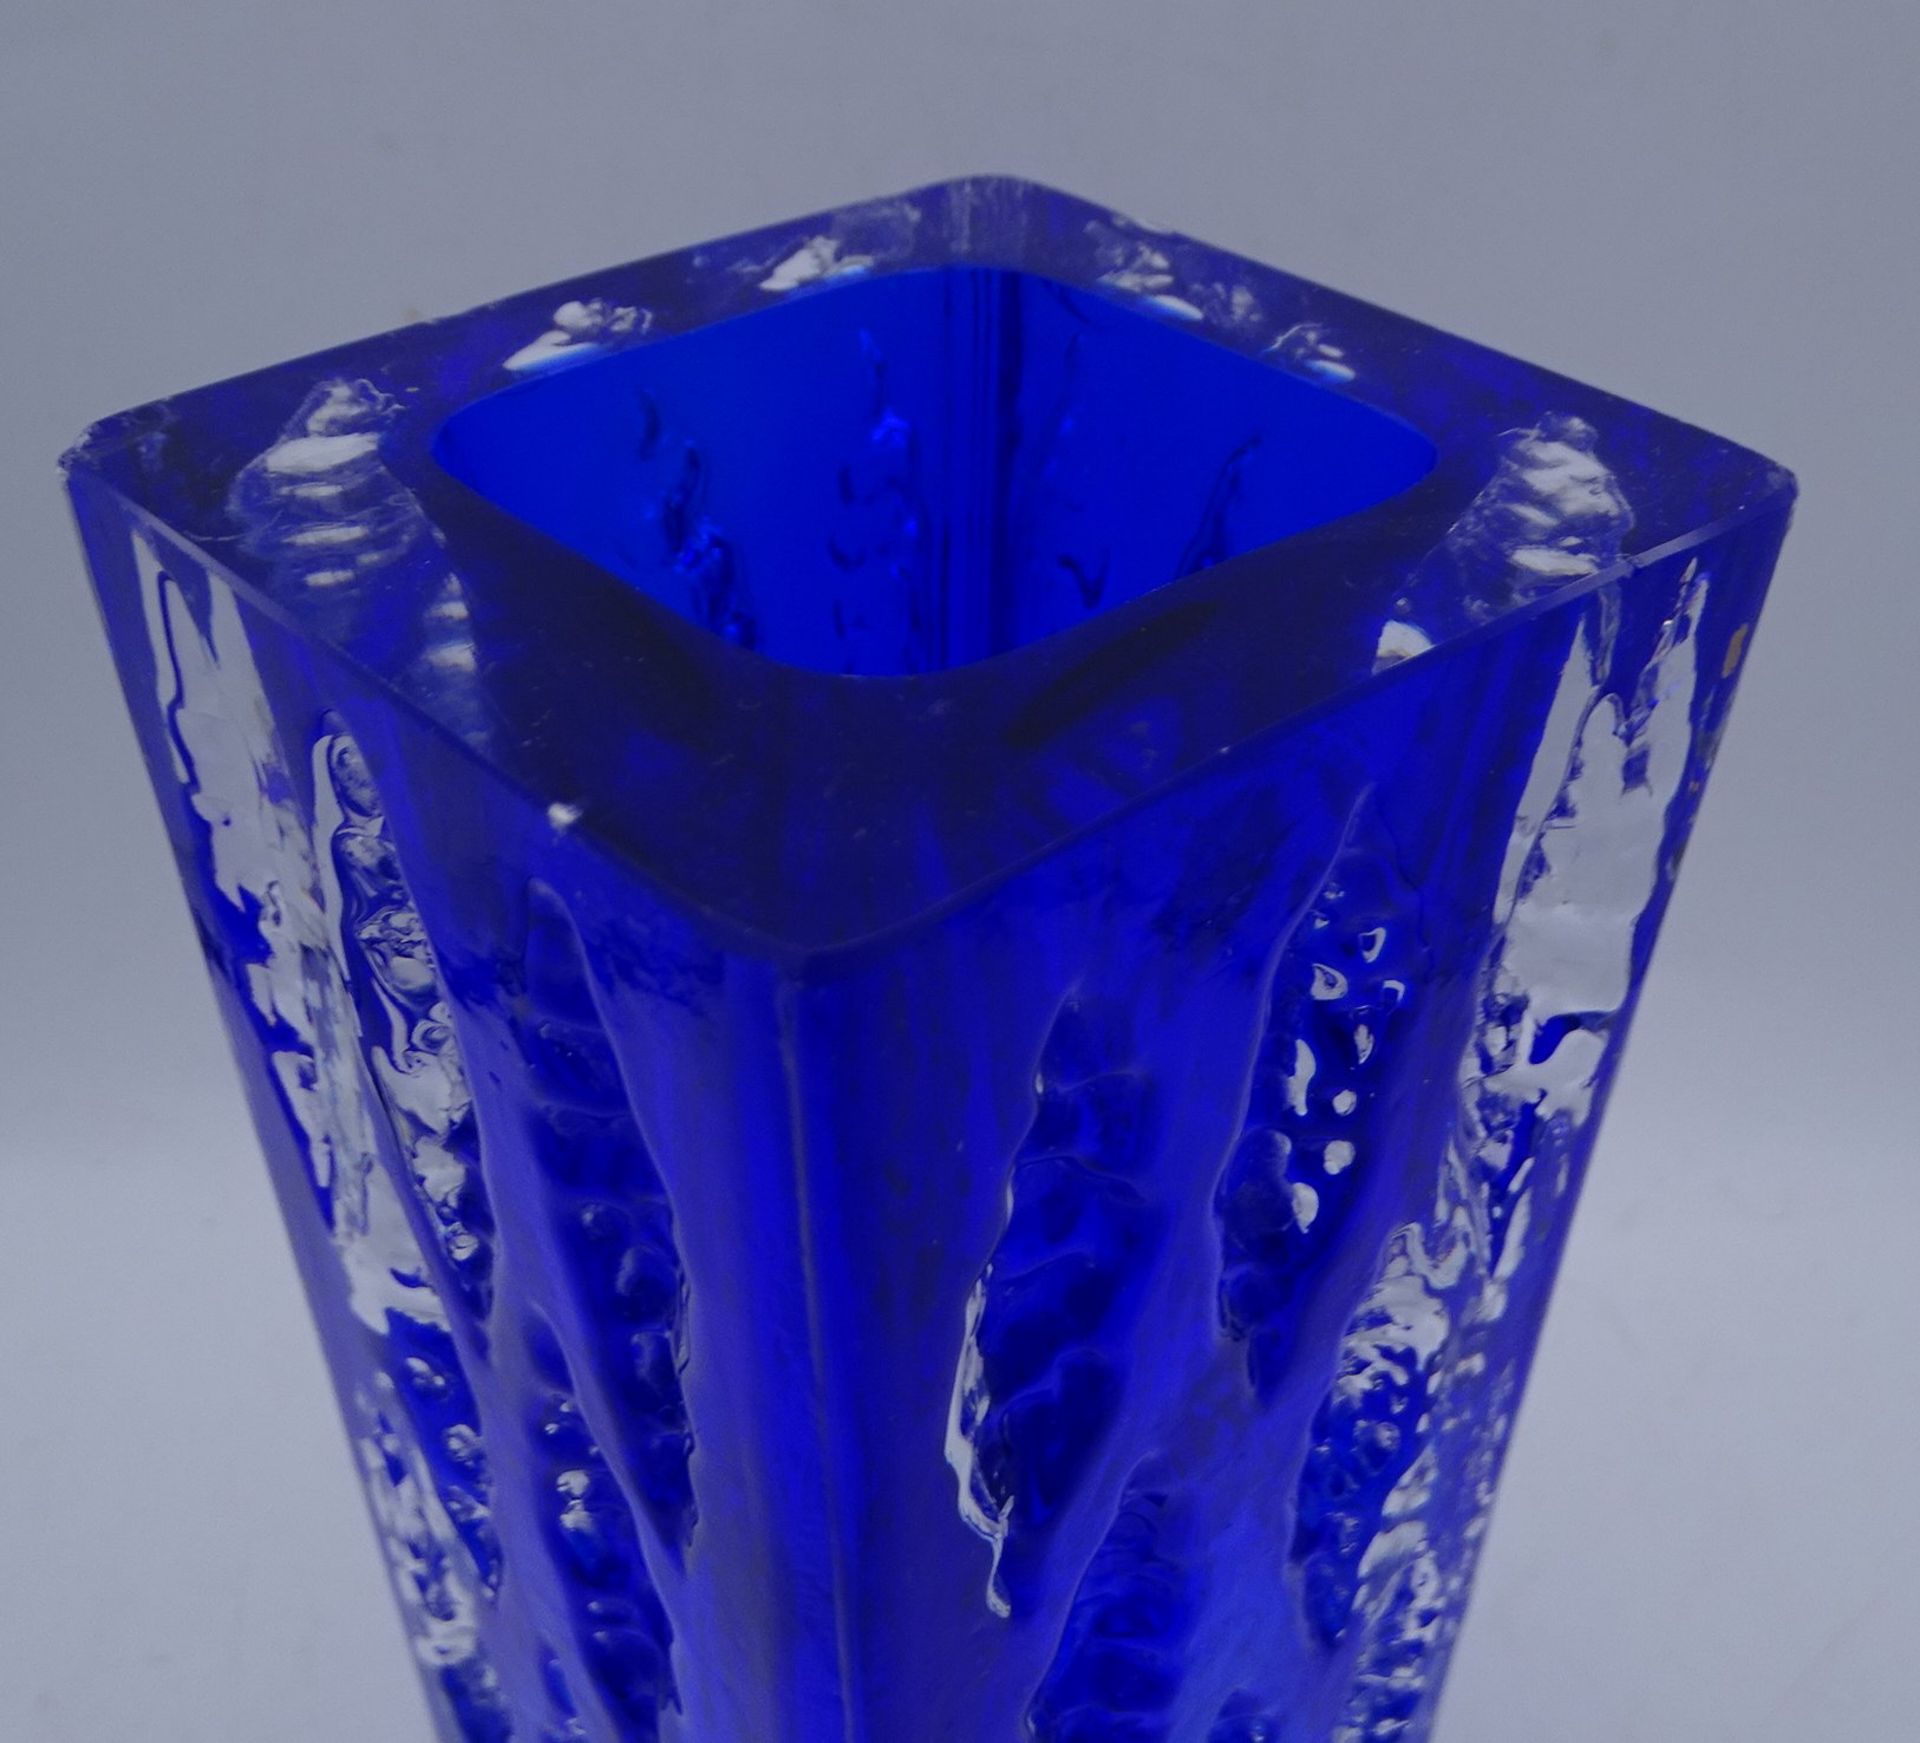 blau/klare  dicke Kunstglasvase, H-18 cm, 8x8 cm, Rand oben mehrere kl. Abplatzer0 - Bild 3 aus 5